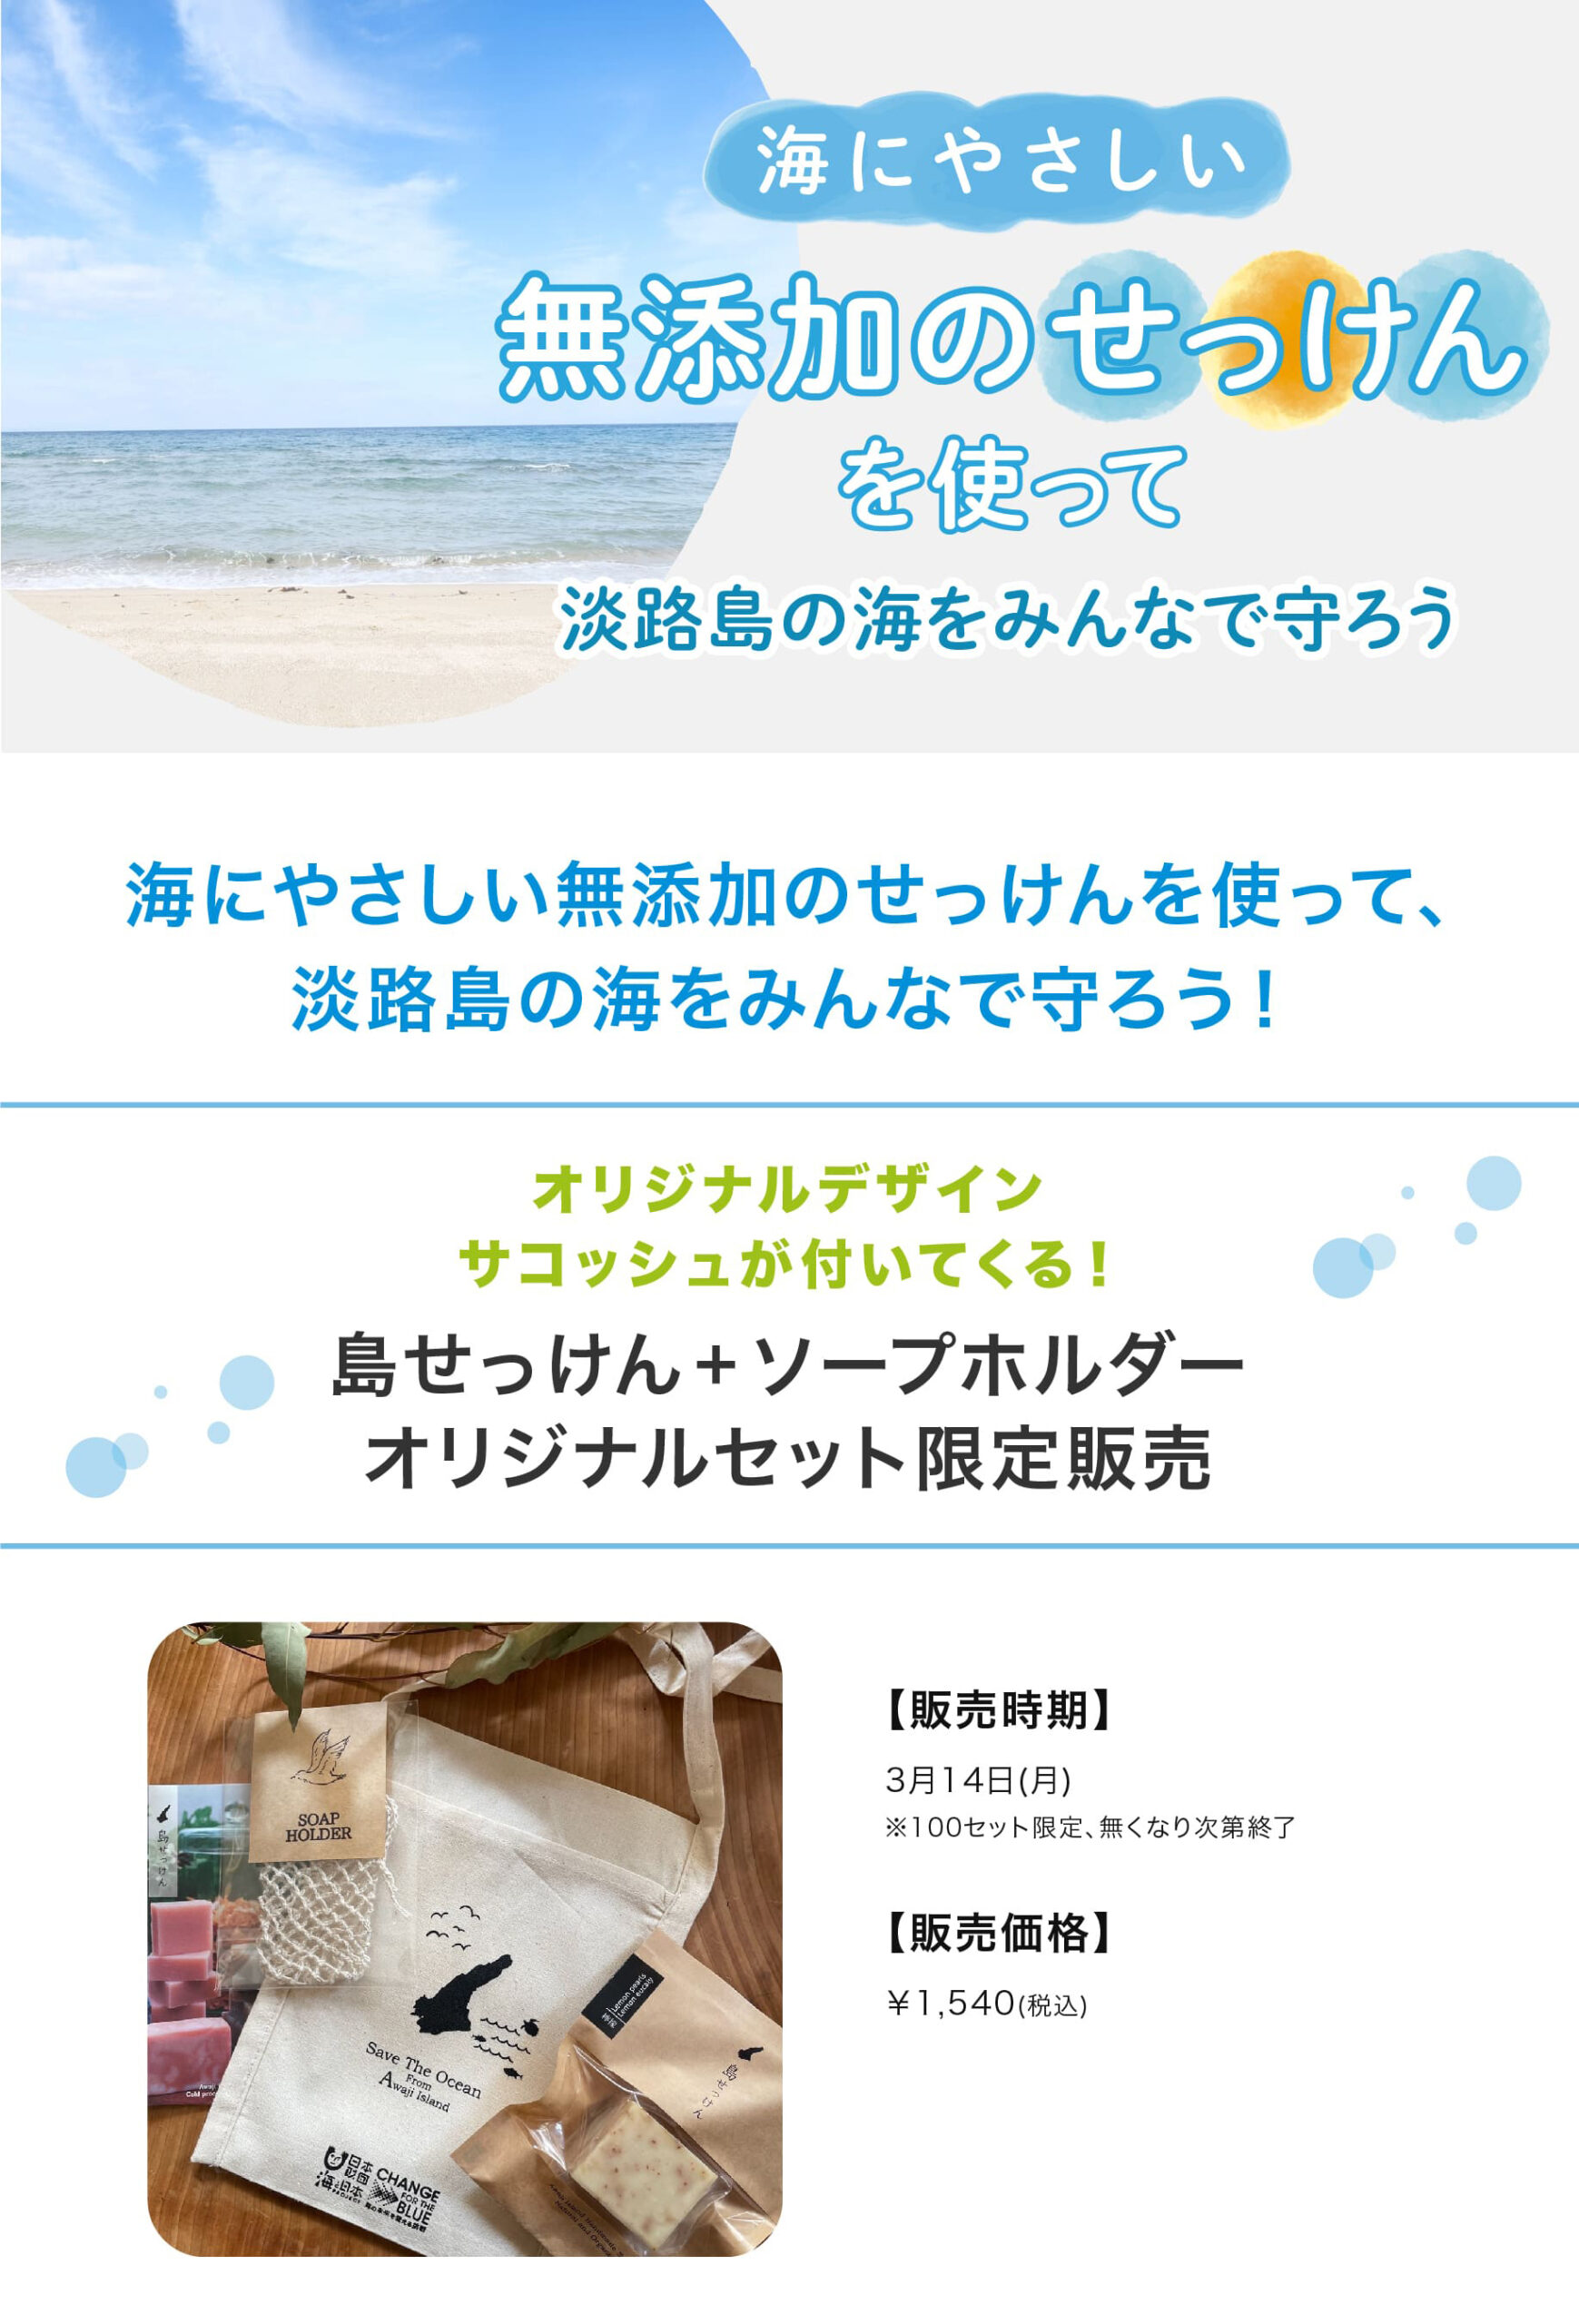 海にやさしい無添加のせっけんを使って、淡路島の海をみんなで守ろう！